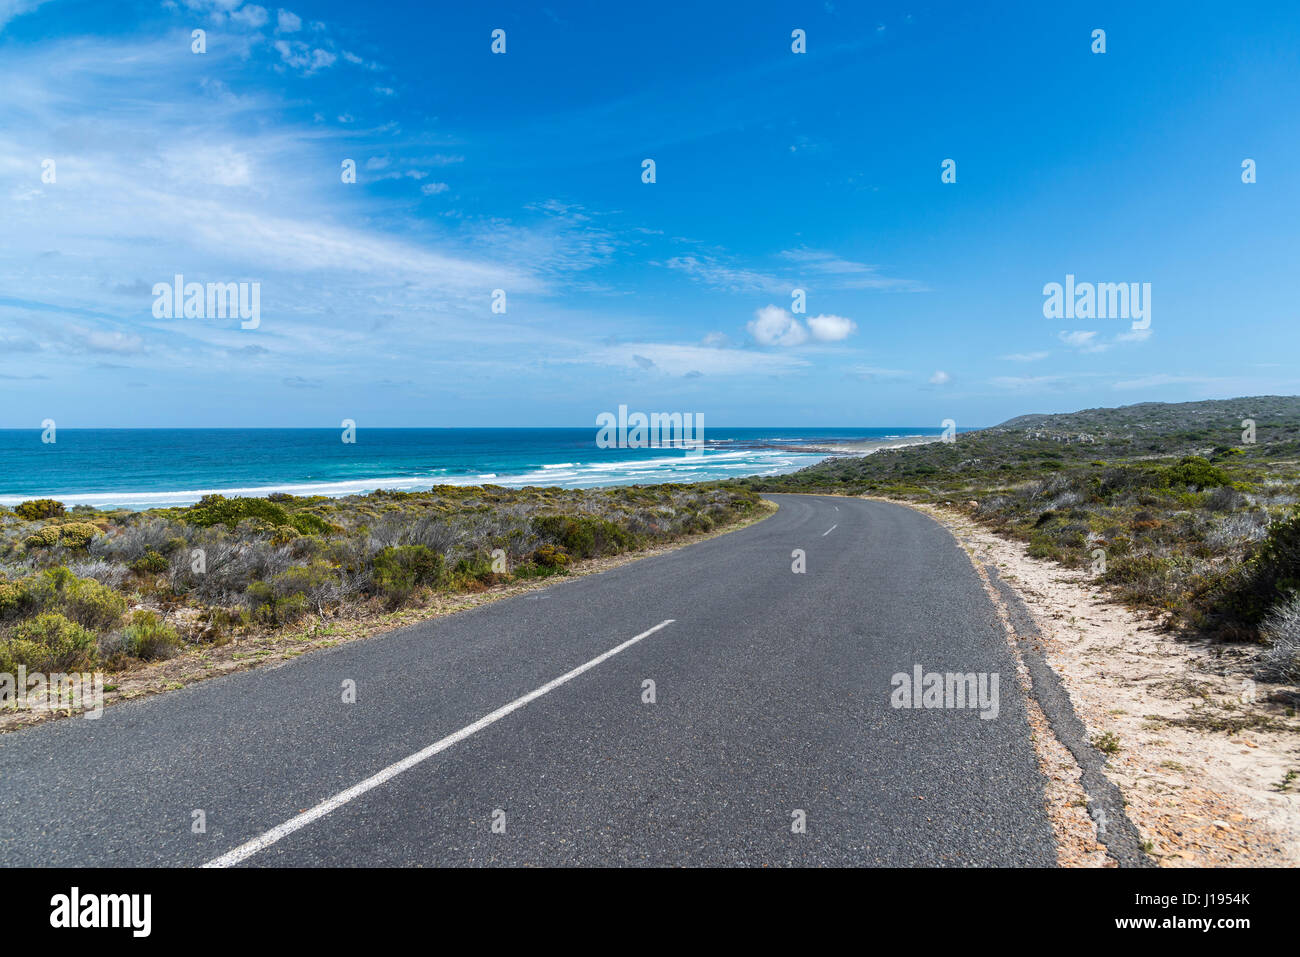 L'autoroute au Cap de Bonne Espérance, Province de Western Cape, Afrique du Sud Banque D'Images